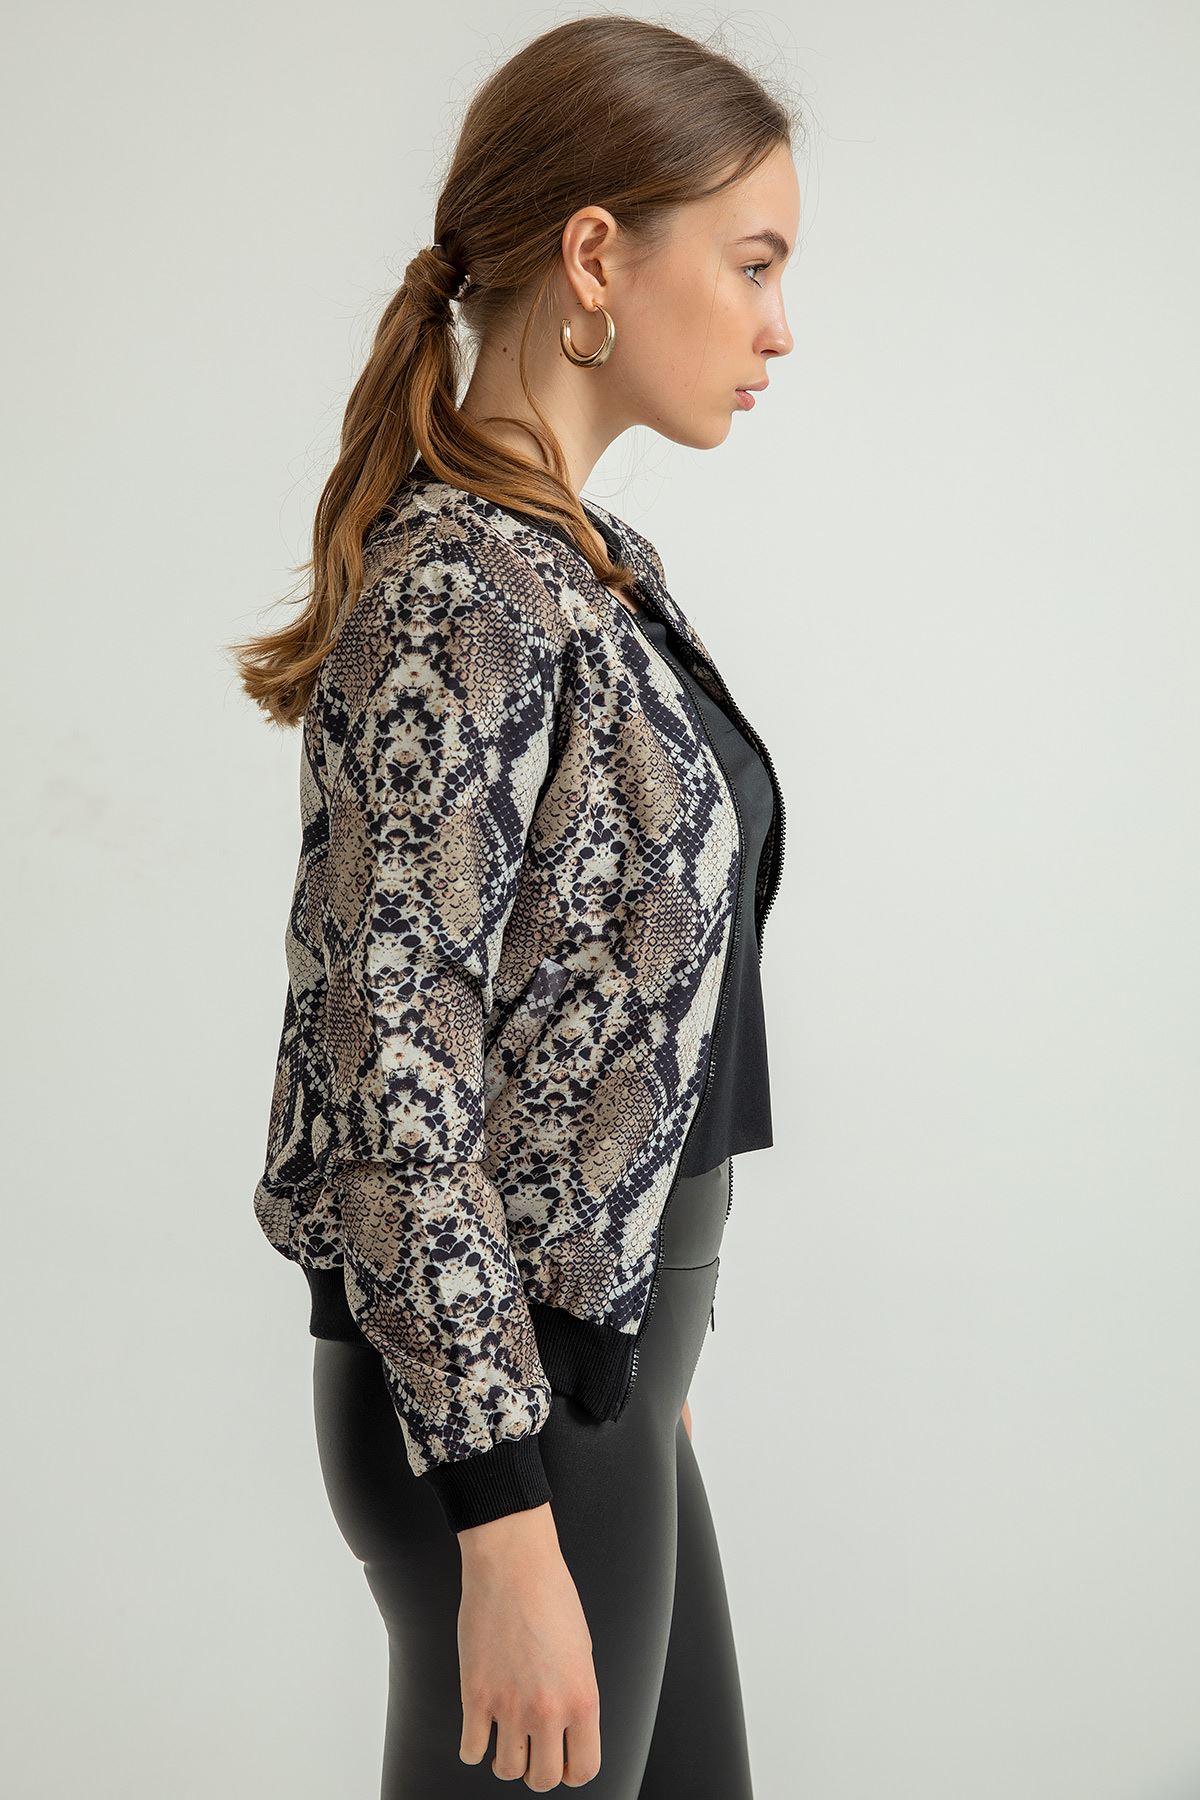 Женская куртка бомбер атласная ткань принтЗМЕИ - каменный